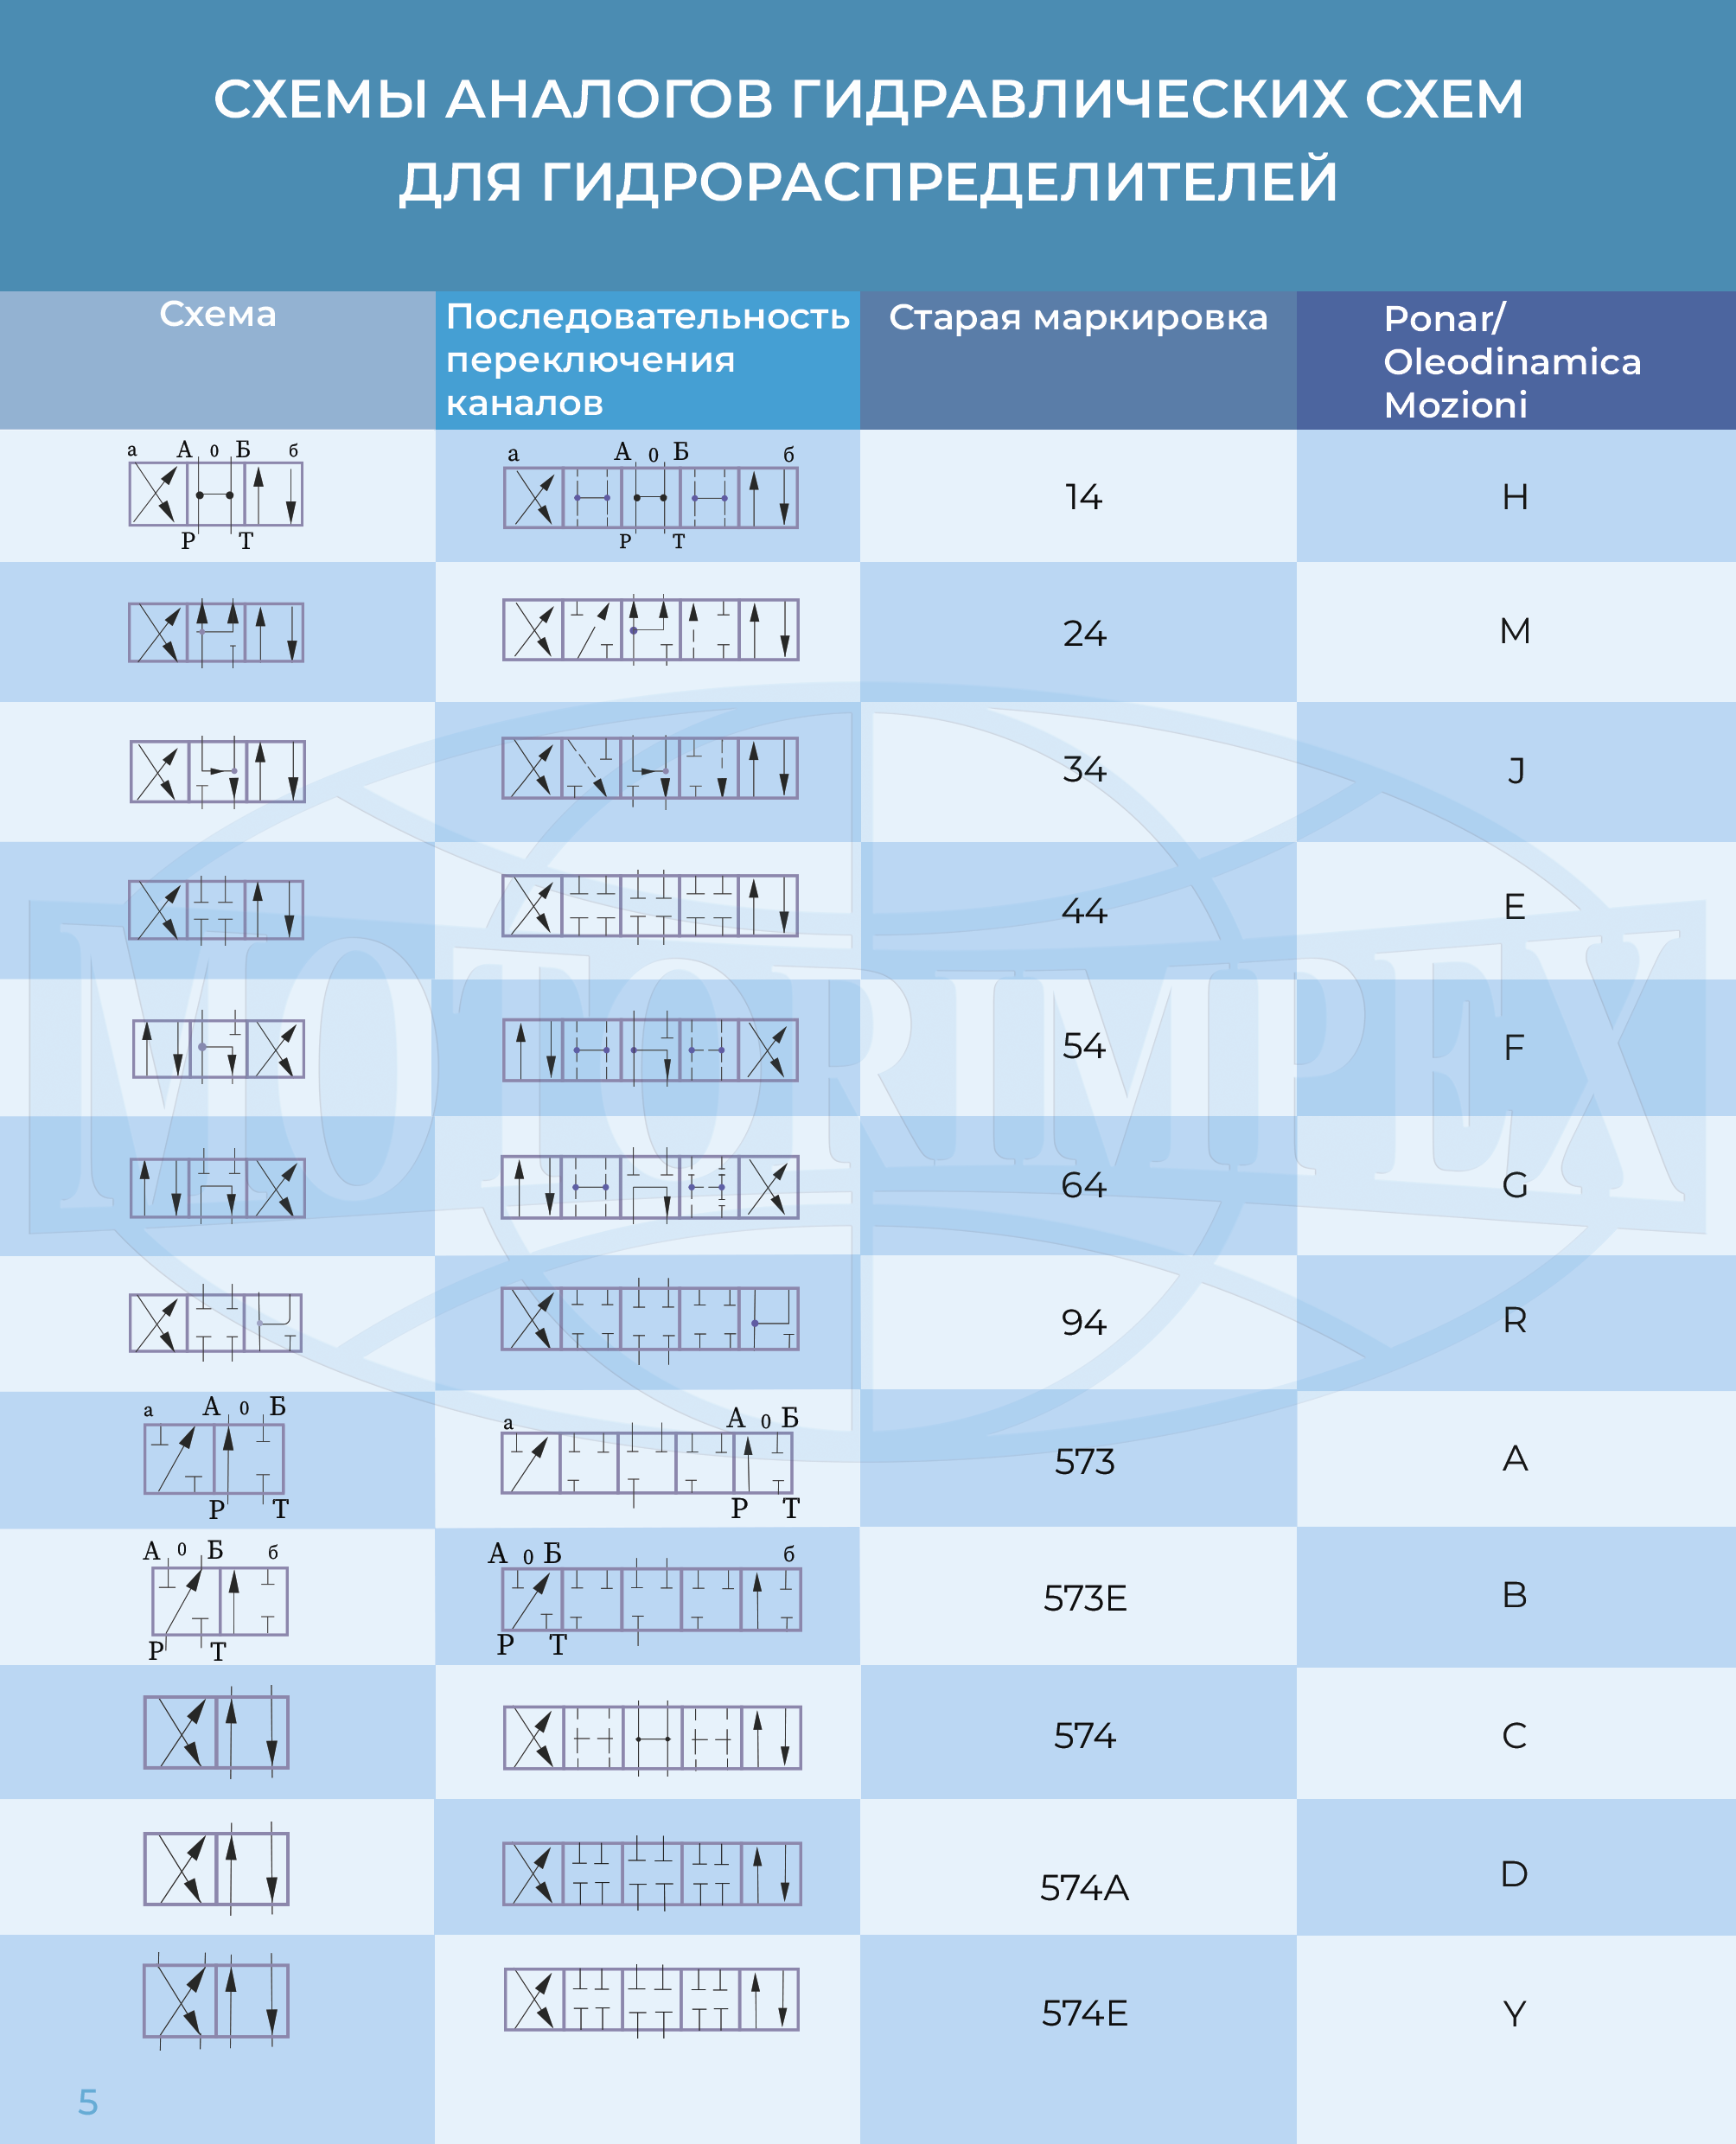 Схемы аналогов гидравлических схем для гидрораспределителей. Каталог Группы компаний Моторимпекс